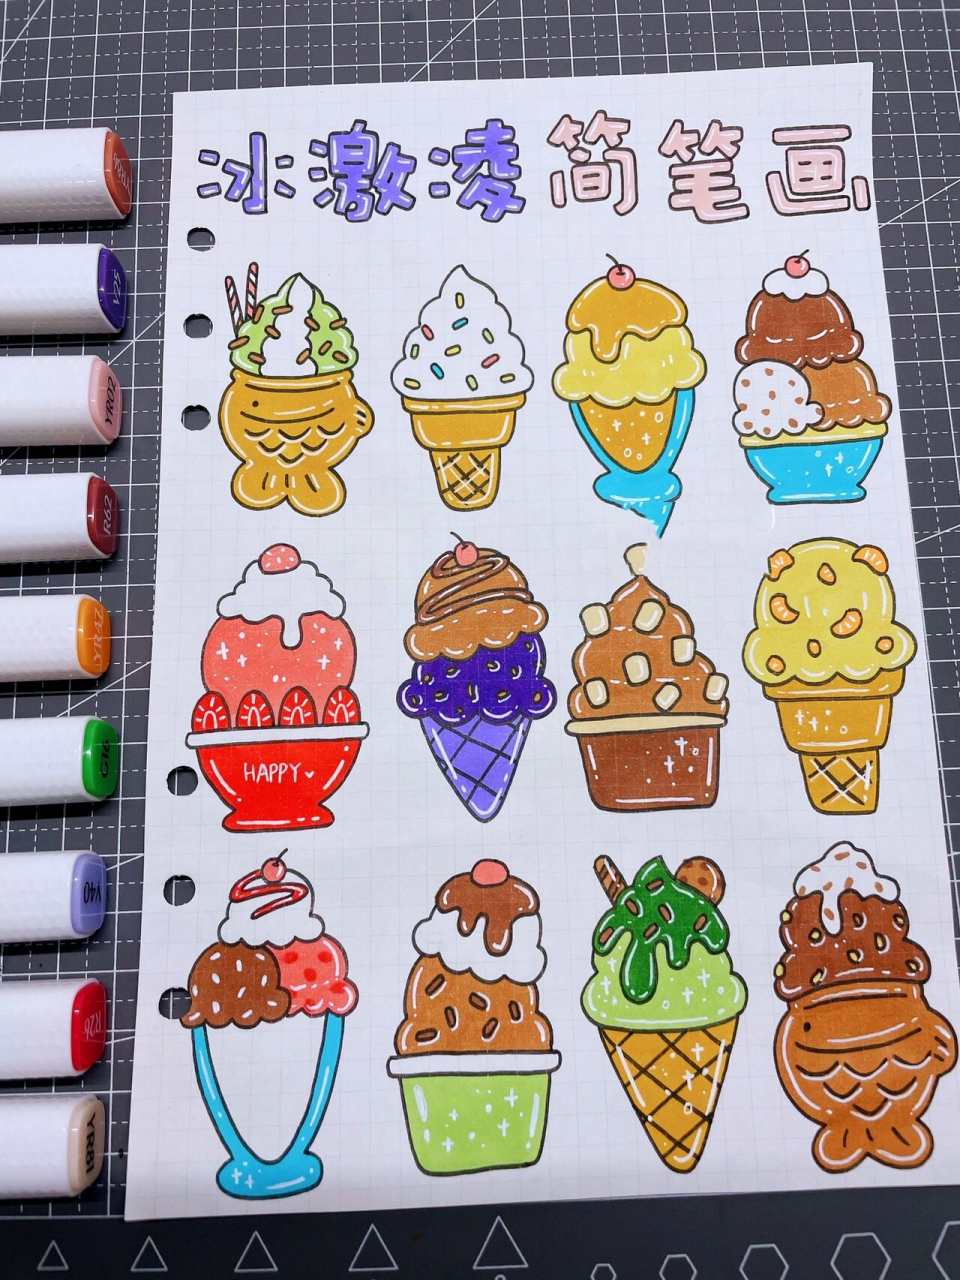 冰淇淋画法 彩色图片